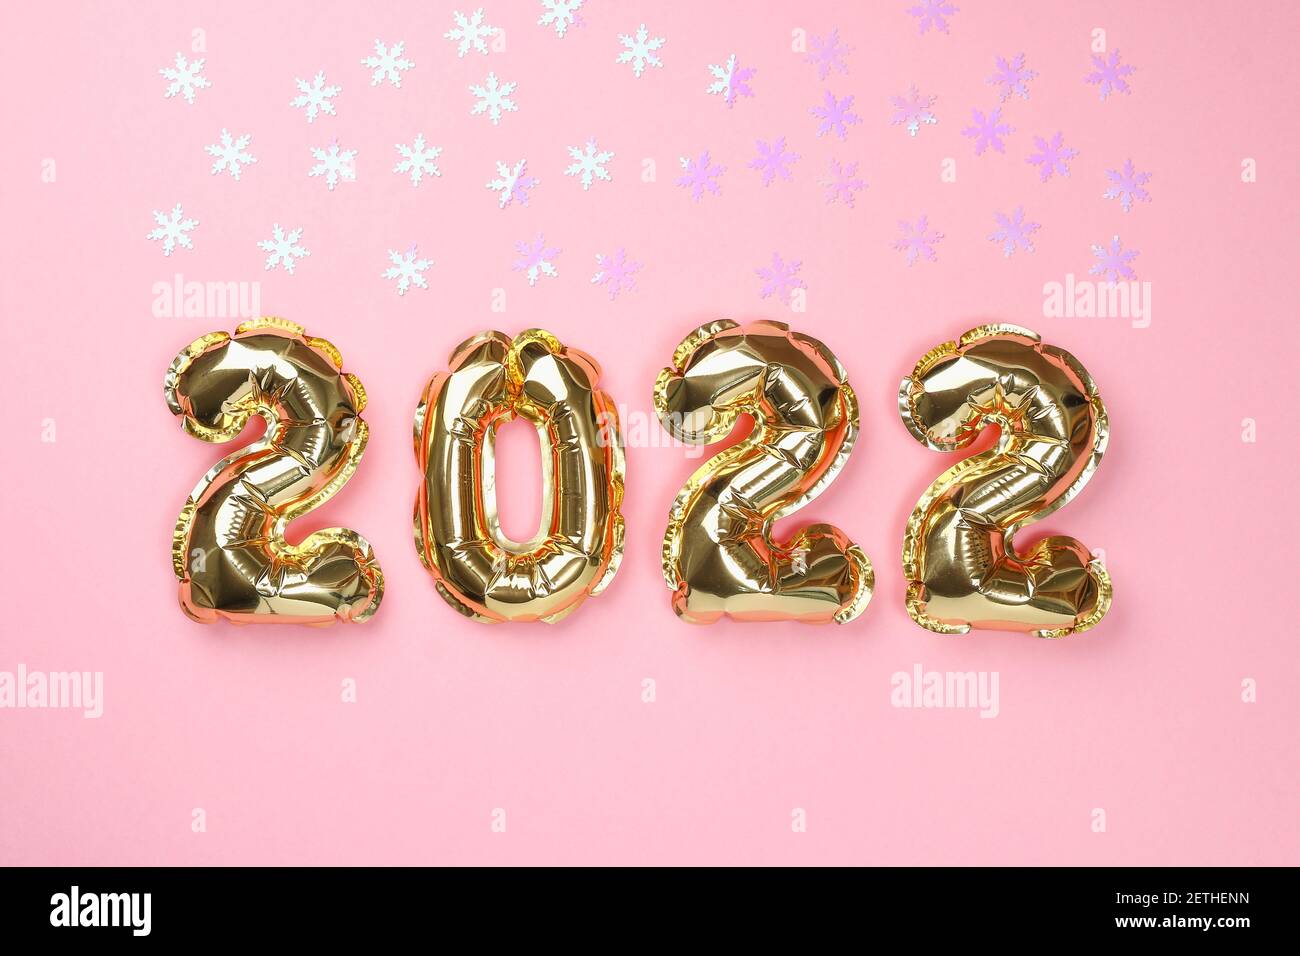 Bong bóng phủ và số 2022 trên nền màu hồng huyền thoại sẽ làm cho ngày Tết của bạn thêm phần đặc biệt và ấm áp. Với những bong bóng phủ màu hồng pastel và số 2022 chắc chắn sẽ trở thành tâm điểm của bữa tiệc Tết đầy niềm vui và hạnh phúc. Cùng tận hưởng khoảnh khắc tuyệt vời này và tạo nên những kỉ niệm đáng nhớ trong năm mới!